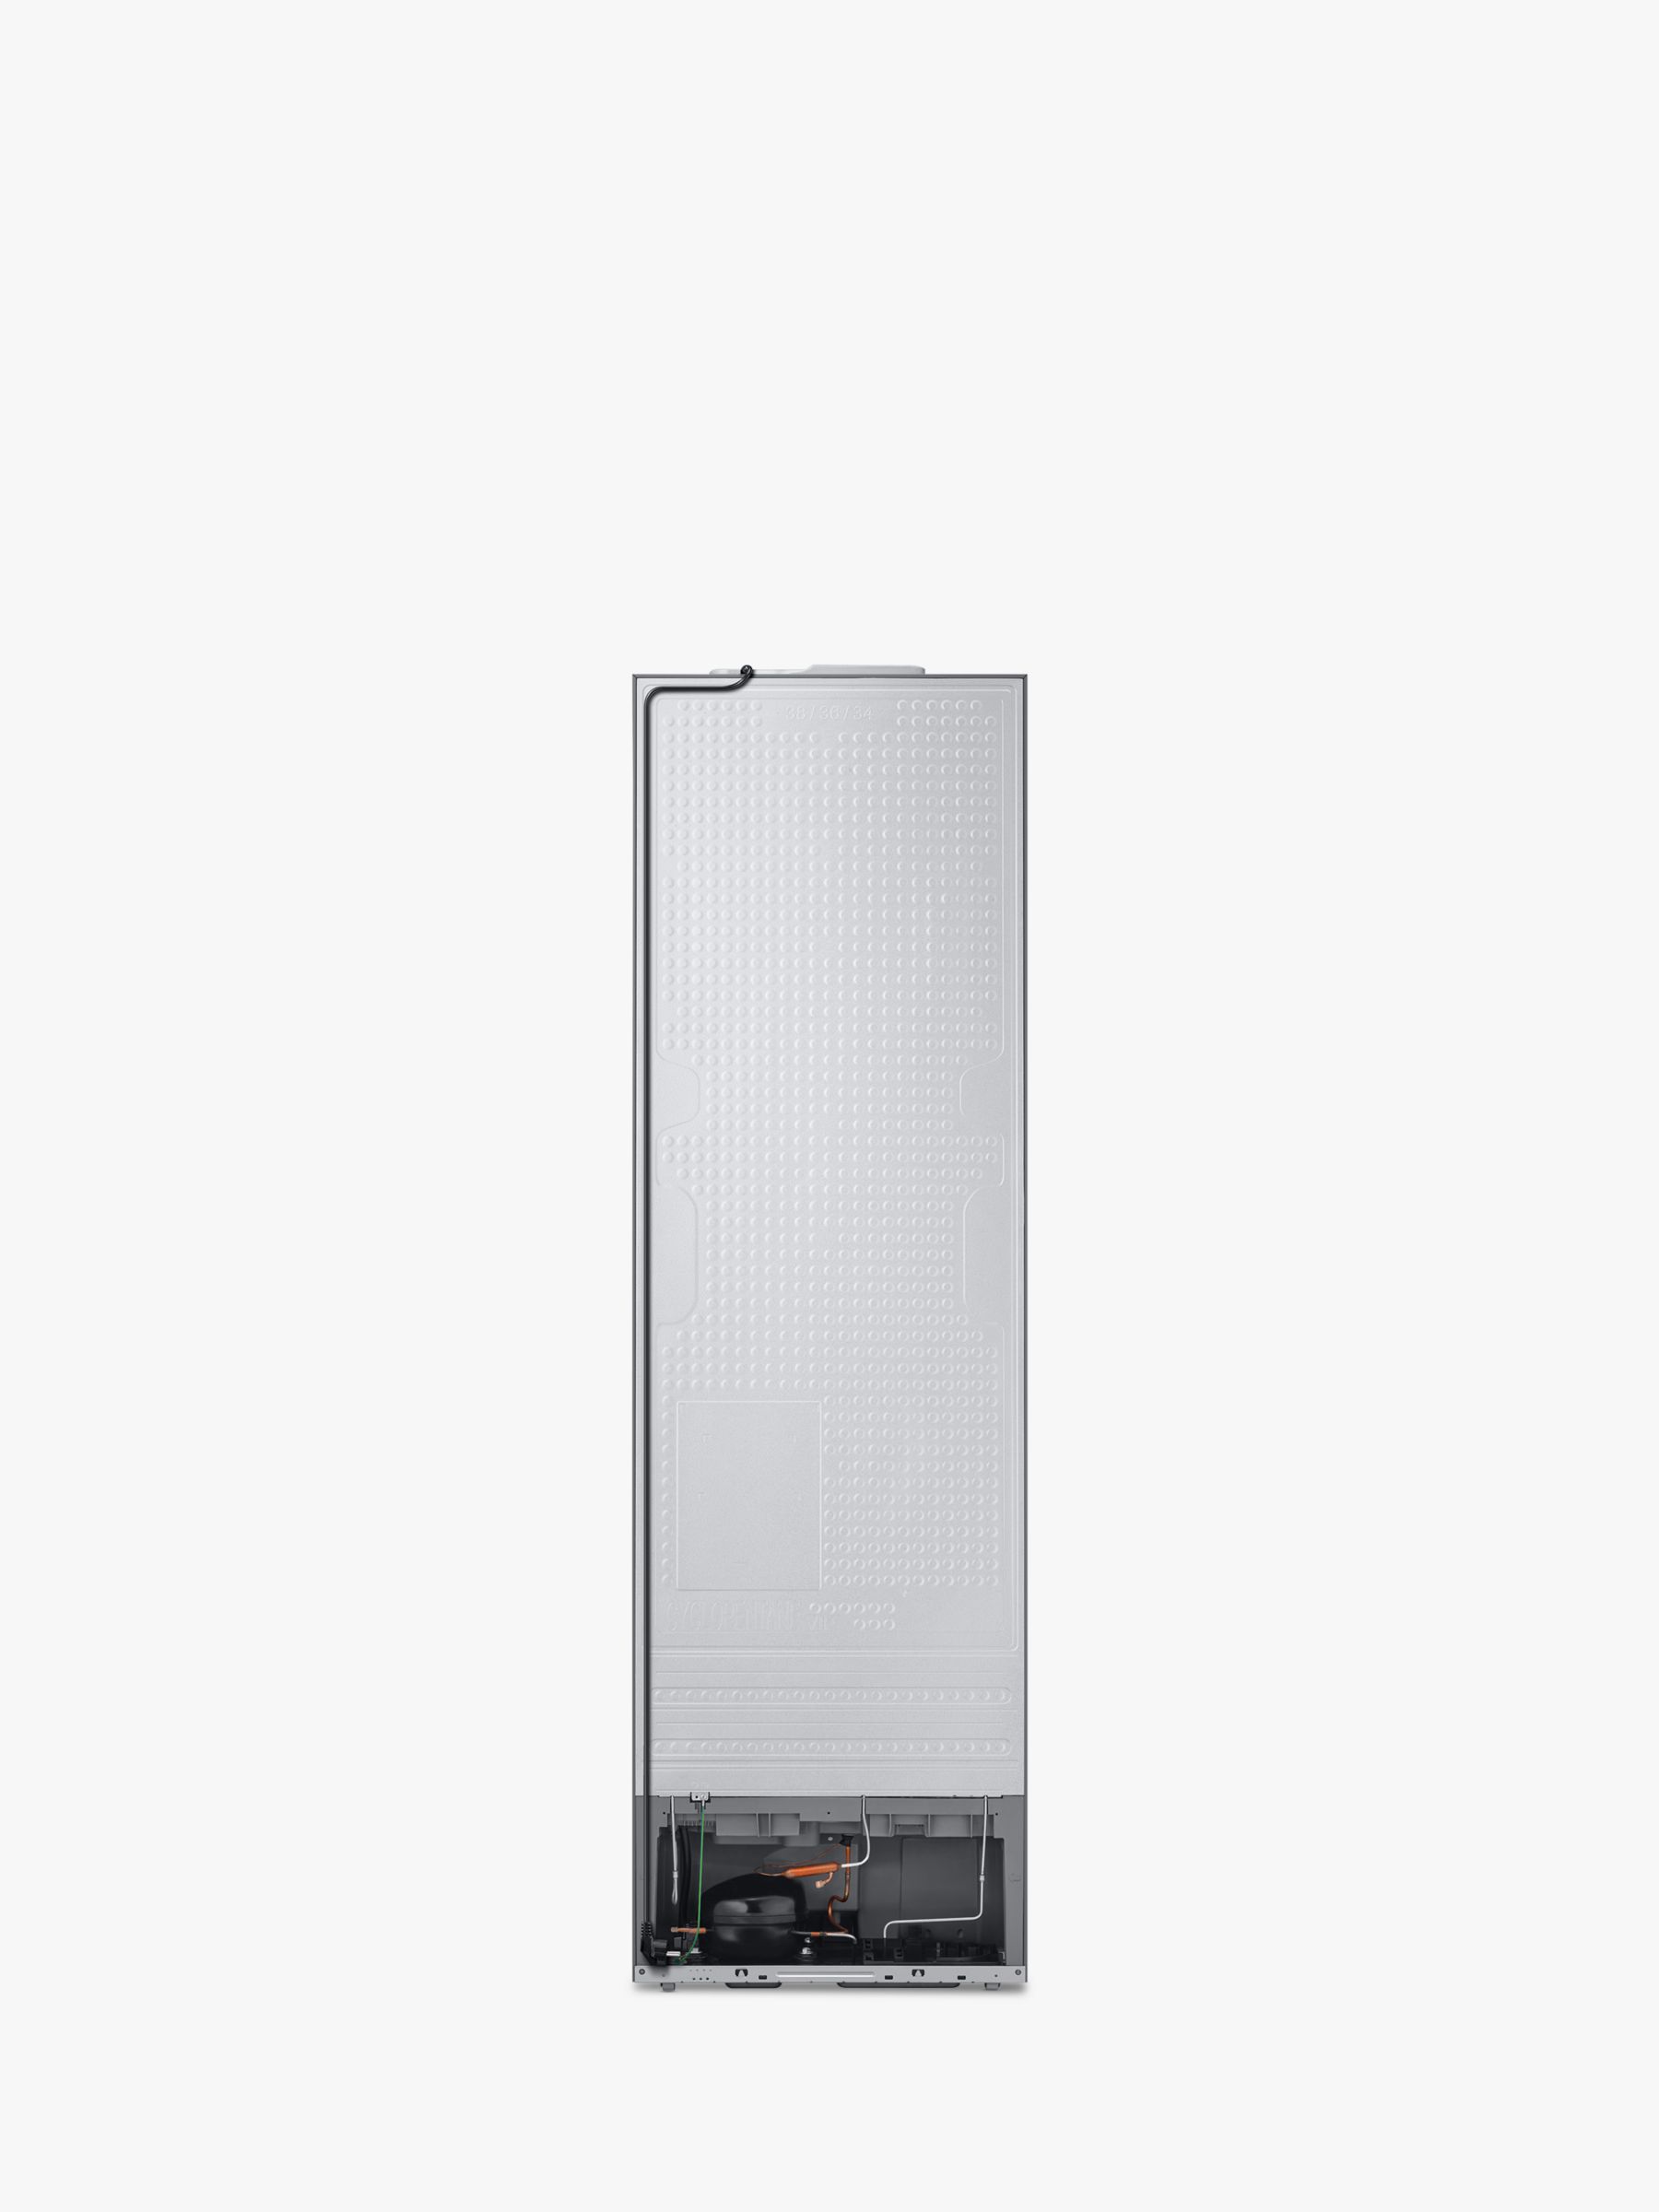 Refrigerateurs combines inverses samsung rl 36 t 620 esa